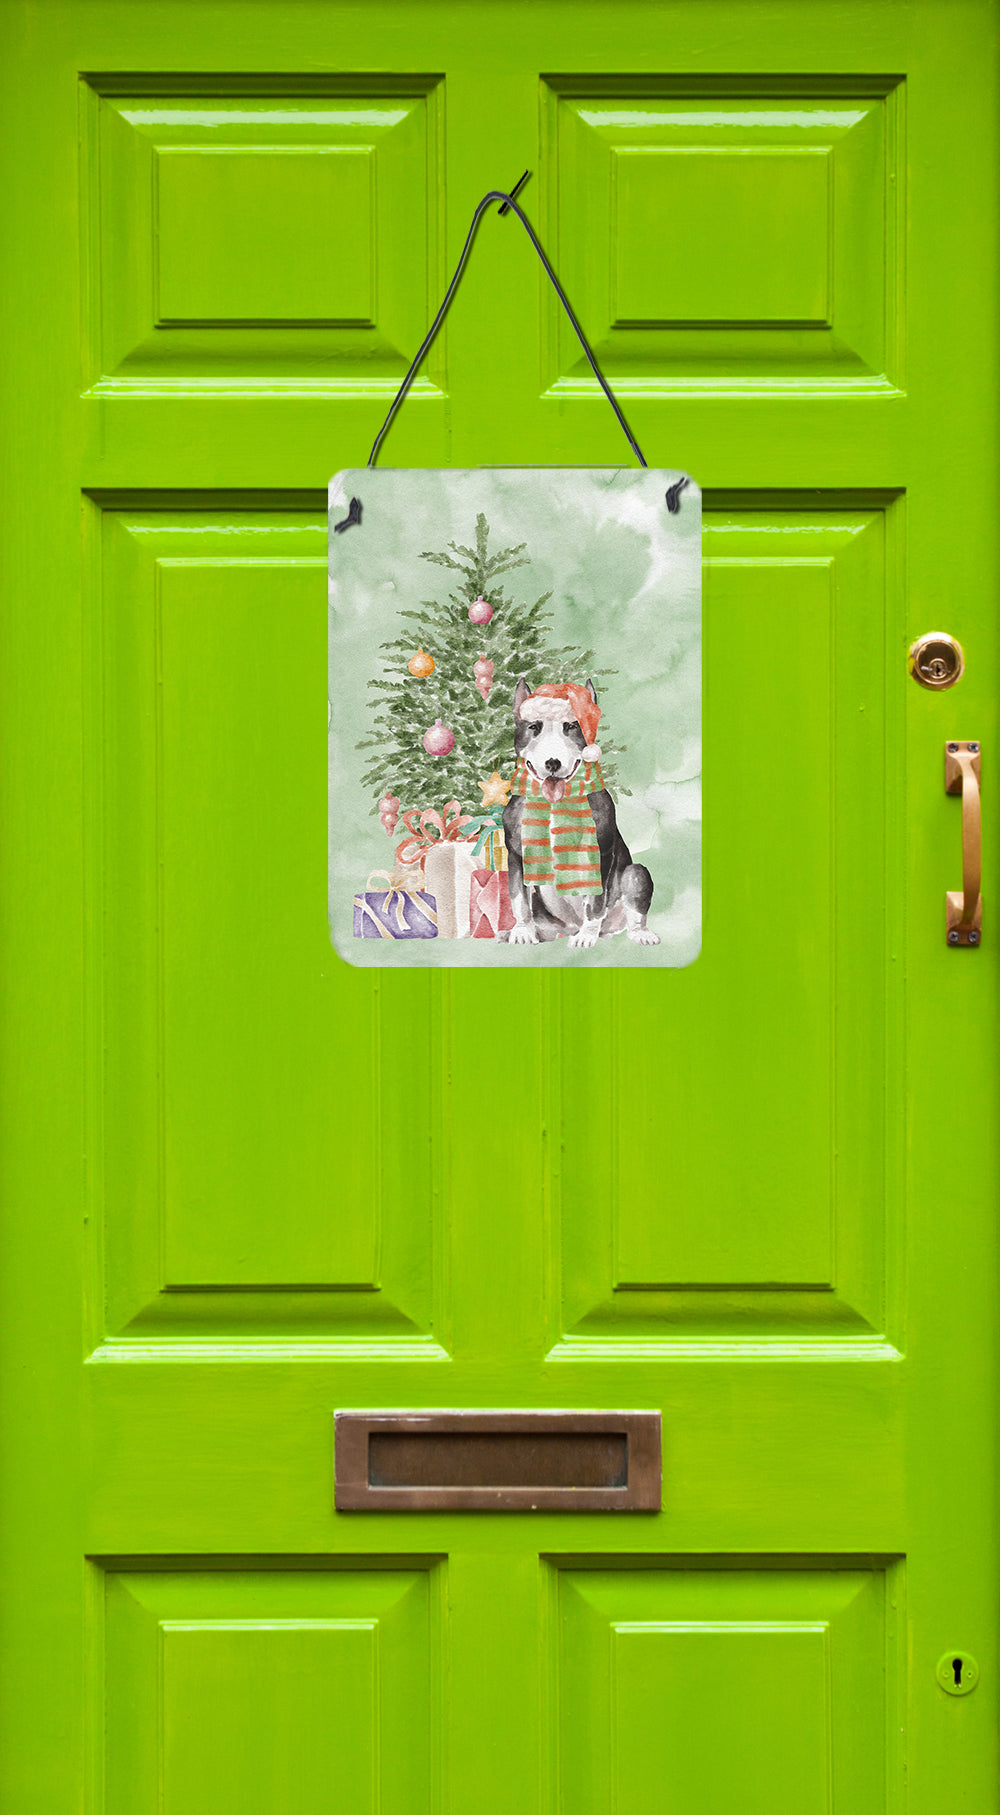 Buy this Christmas Bull Terrier Black Wall or Door Hanging Prints